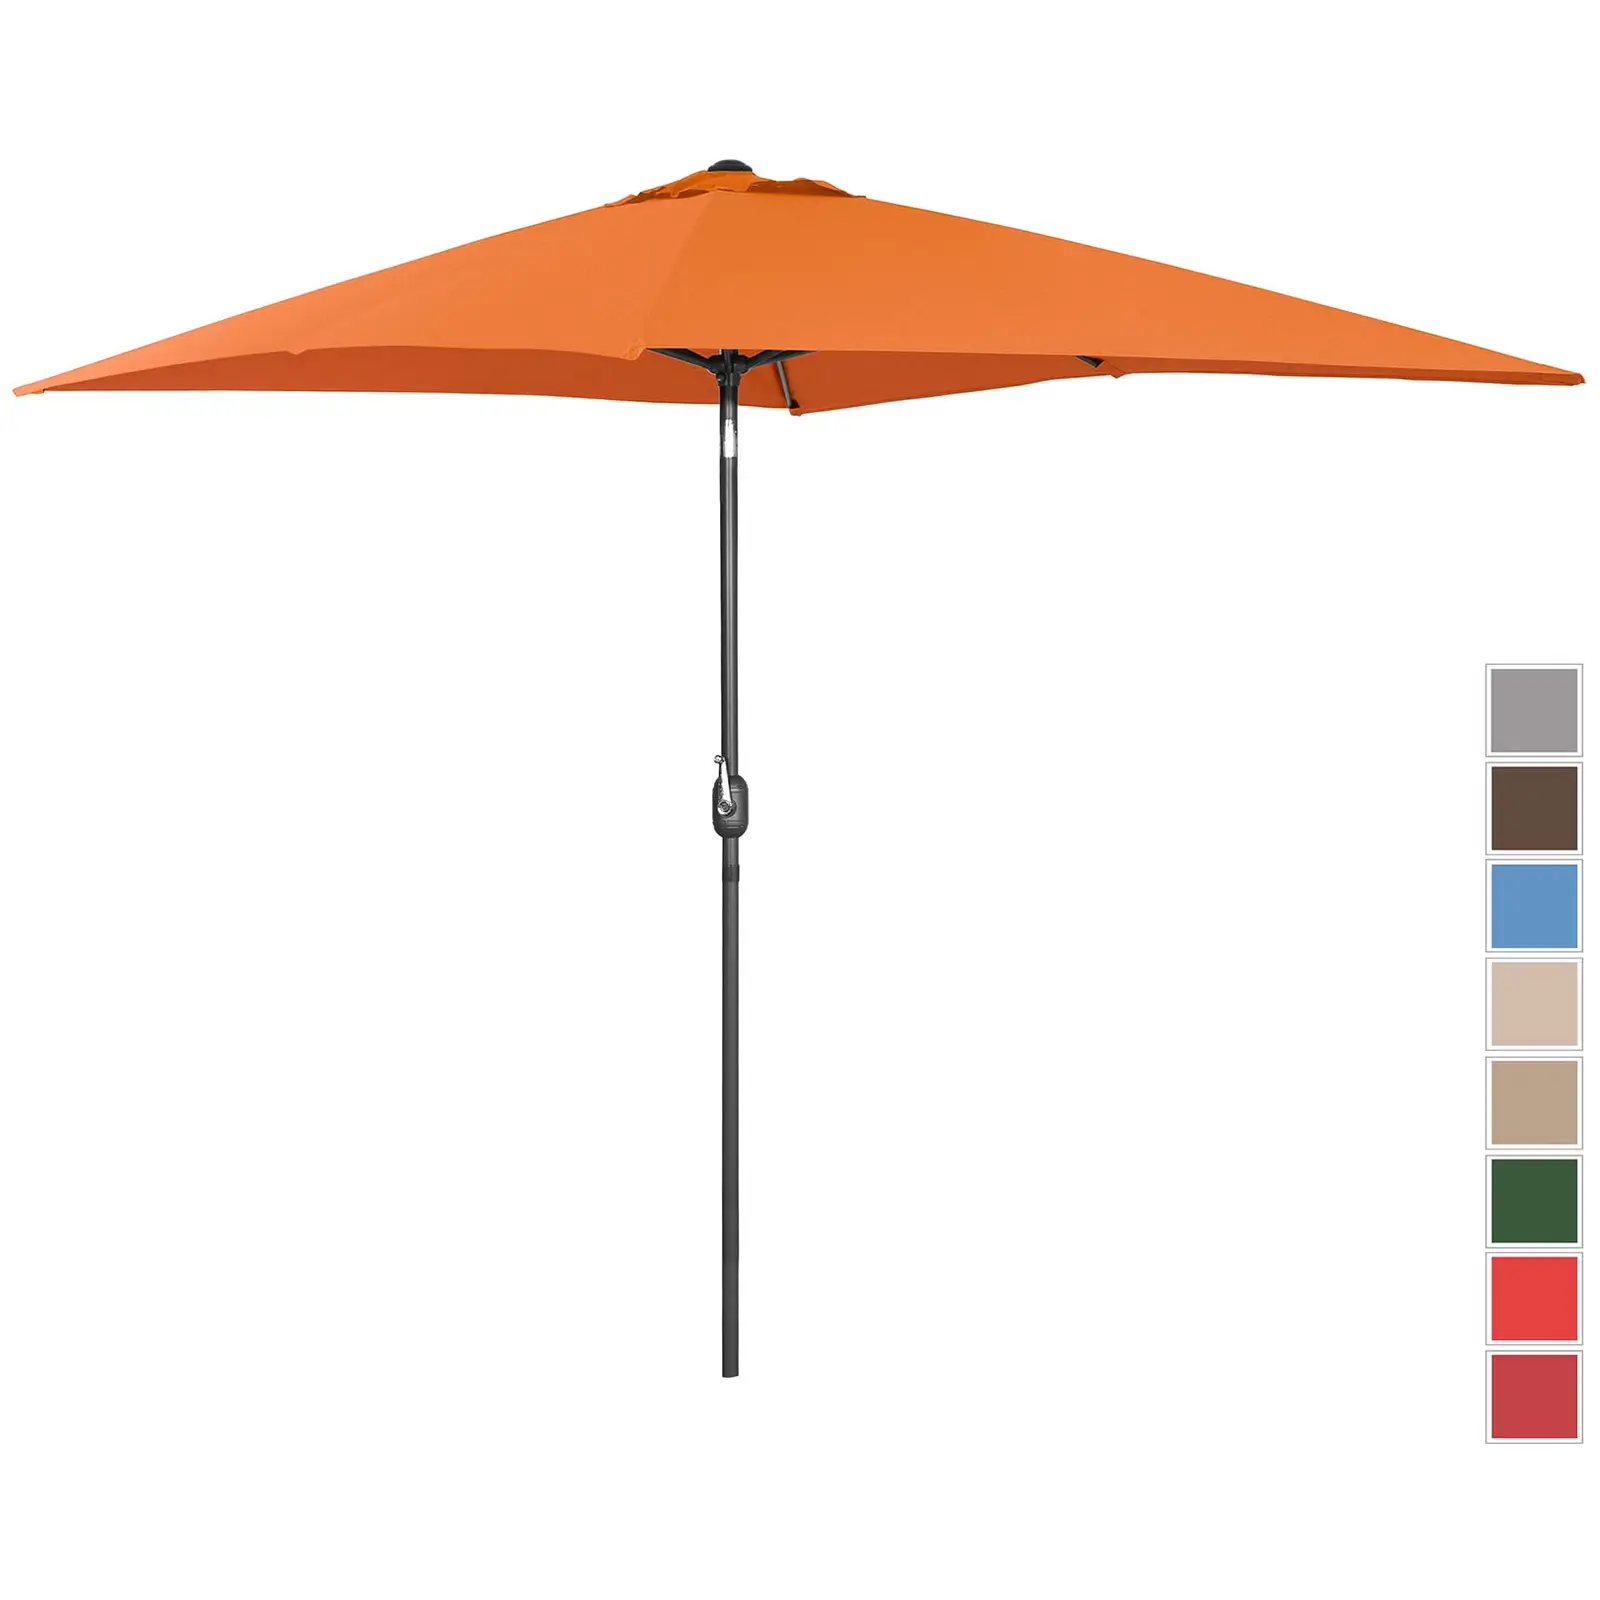 Голям външен чадър - оранжев - правоъгълен - 200 x 300 см - накланящ се